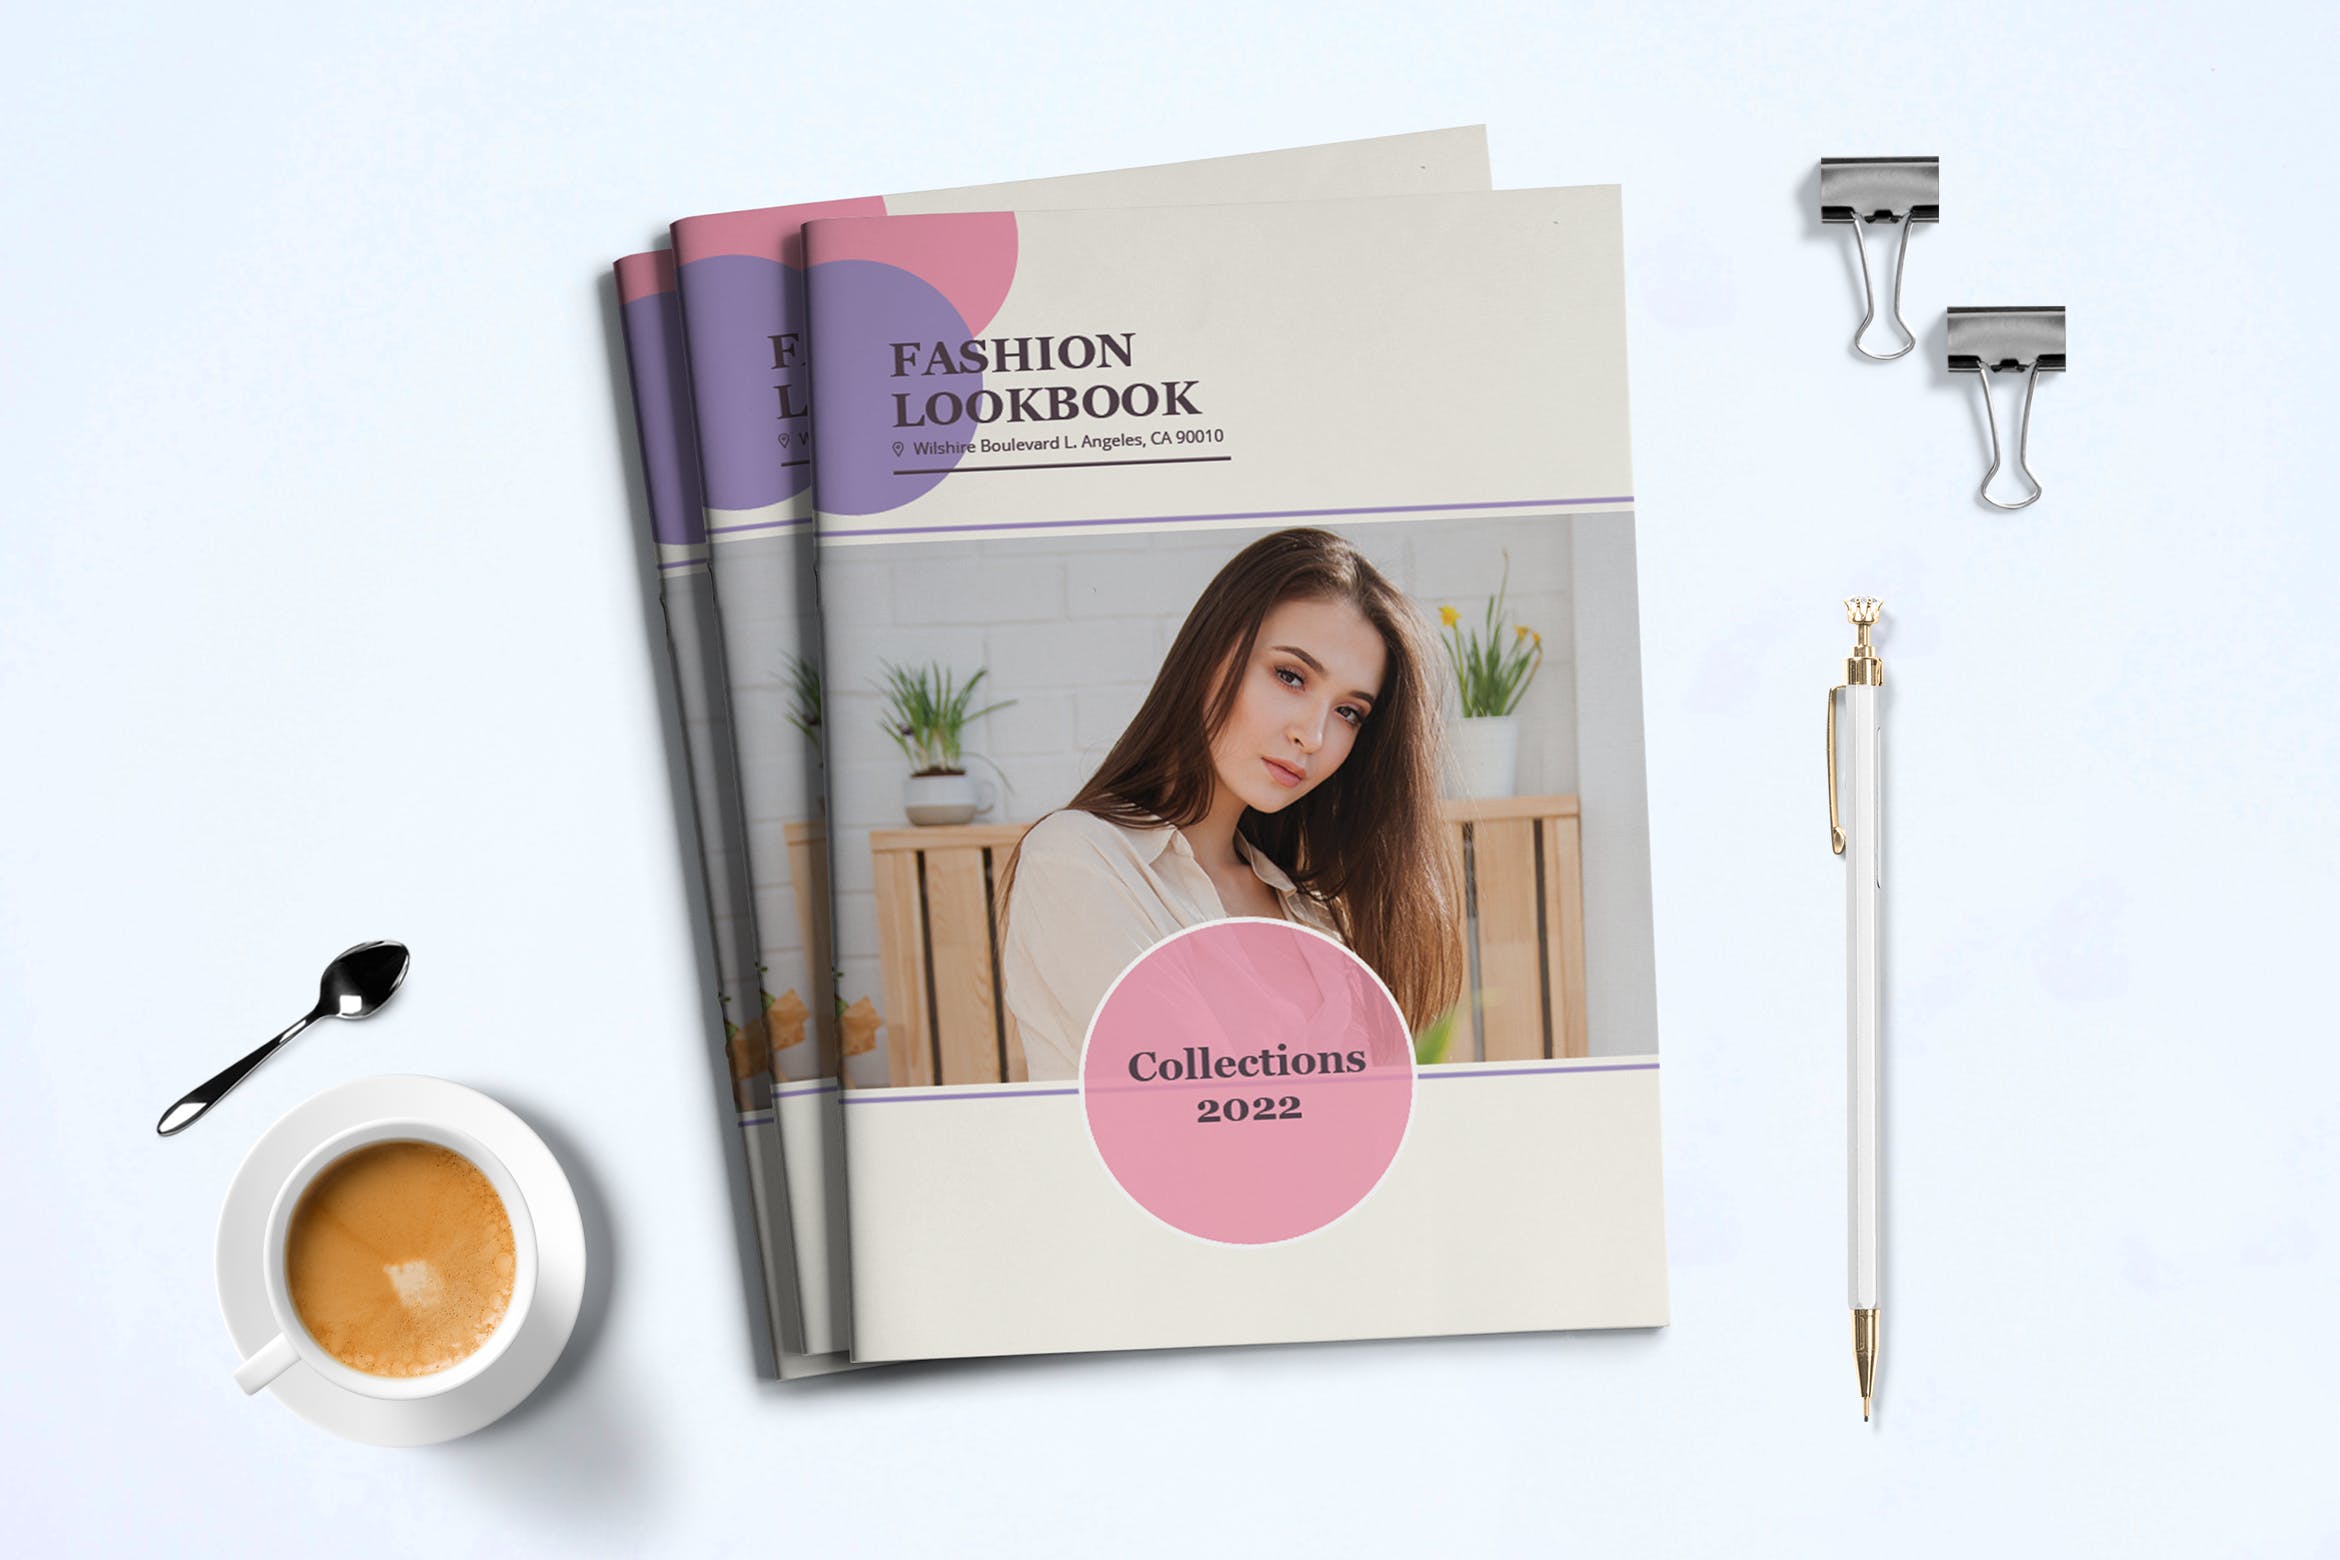 时装订货画册/新品上市产品素材库精选目录设计模板v3 Fashion Lookbook Template插图